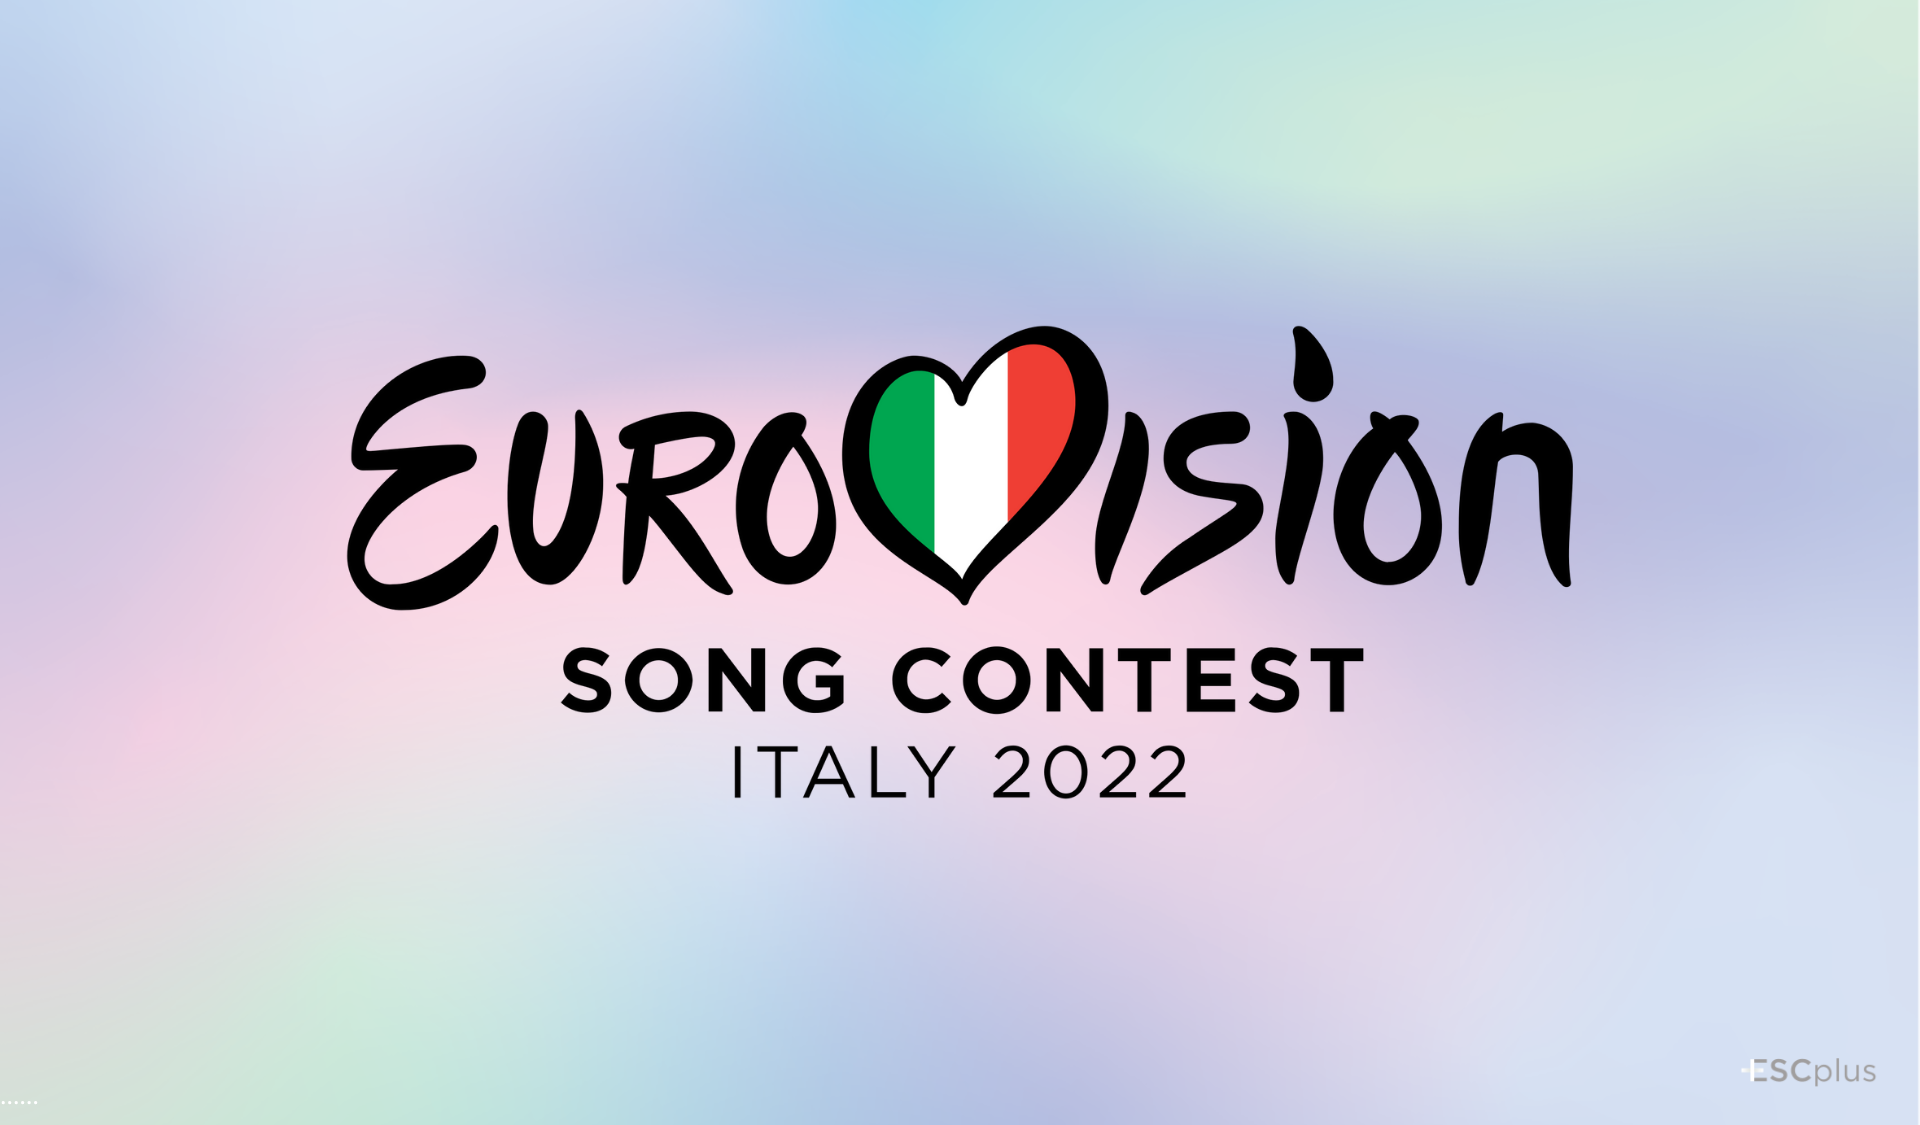 Doce ciudades compiten (de momento) por organizar el Festival de Eurovisión 2022